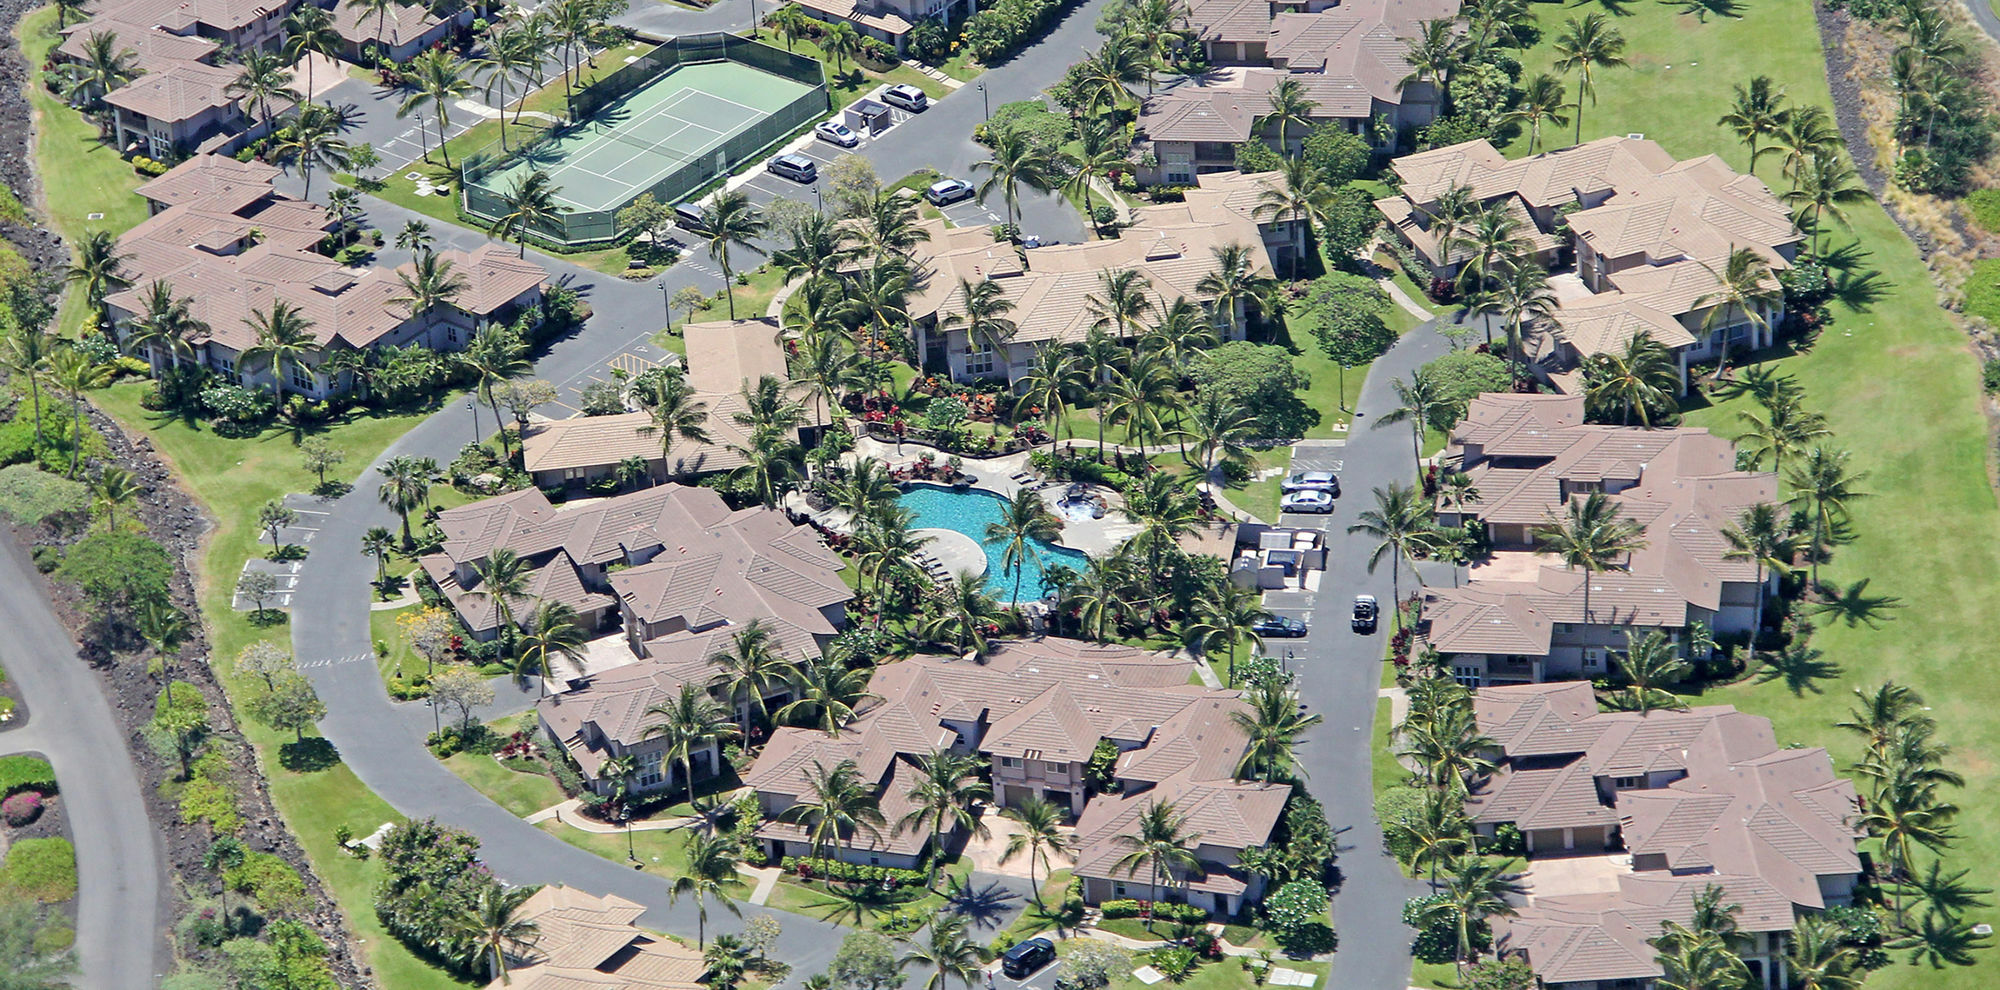 Aston Waikoloa Colony Villas Eksteriør billede